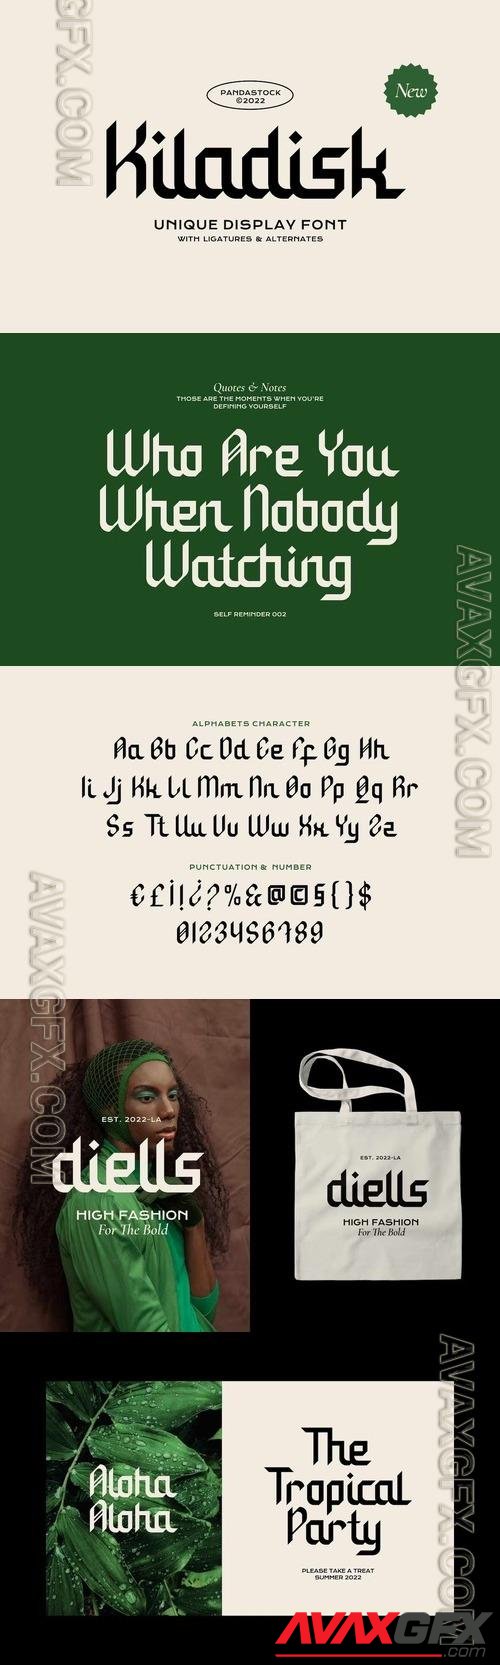 Kiladisk - Display Typeface Font